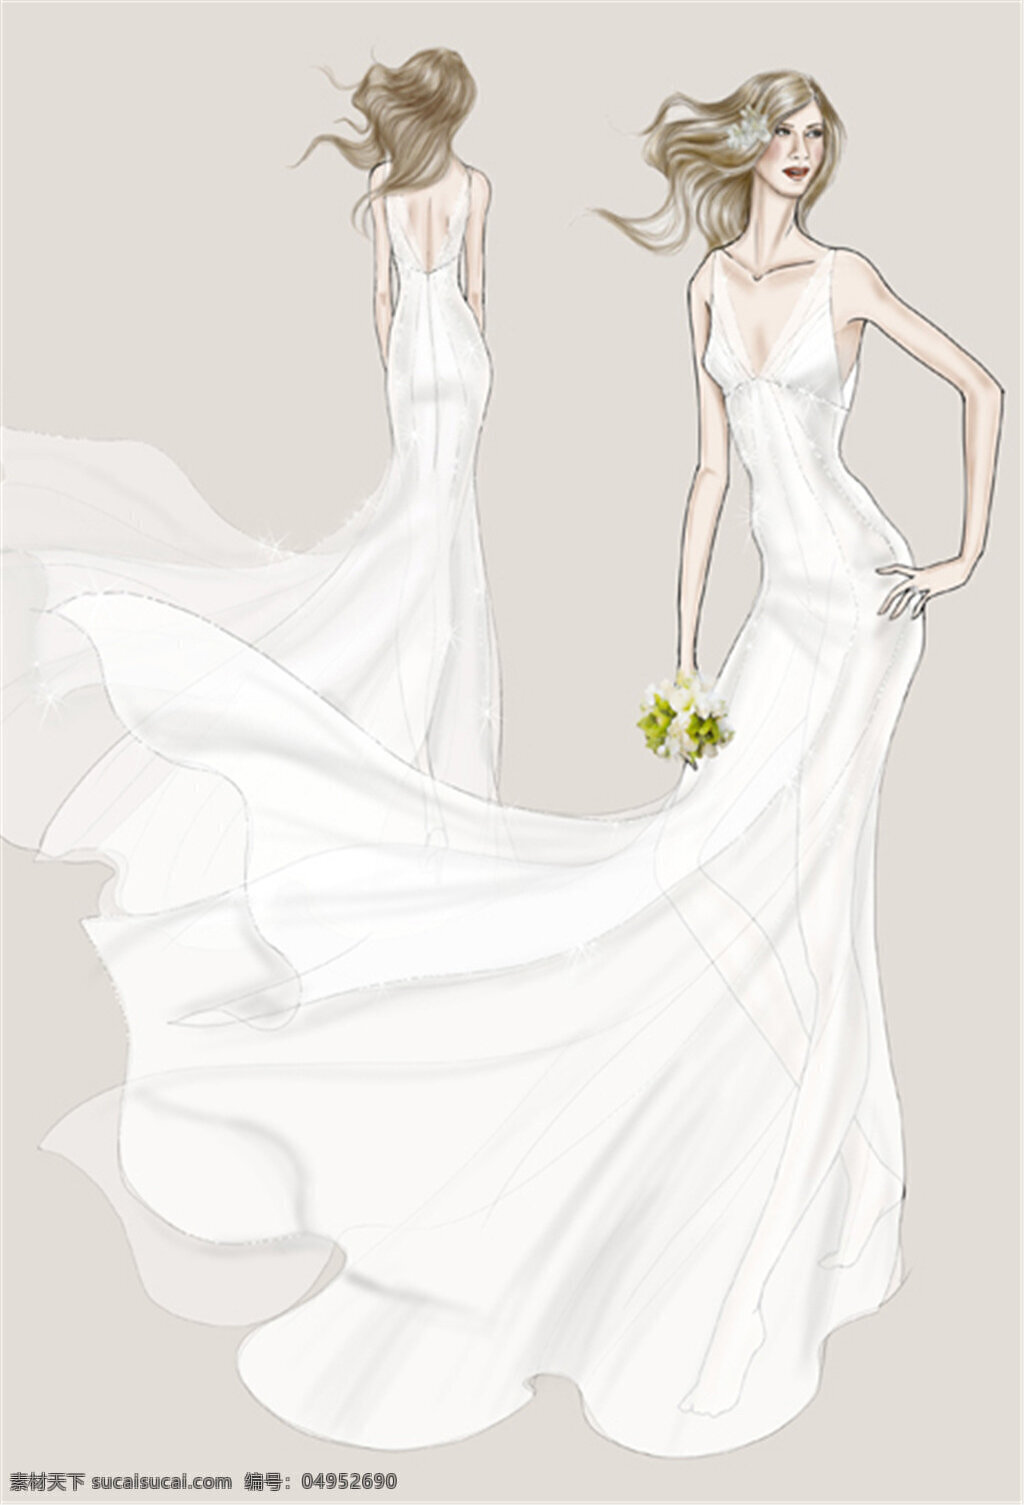 白色 婚纱 长裙 设计图 服装设计 时尚女装 职业女装 职业装 女装设计 效果图 短裙 衬衫 服装 服装效果图 连衣裙